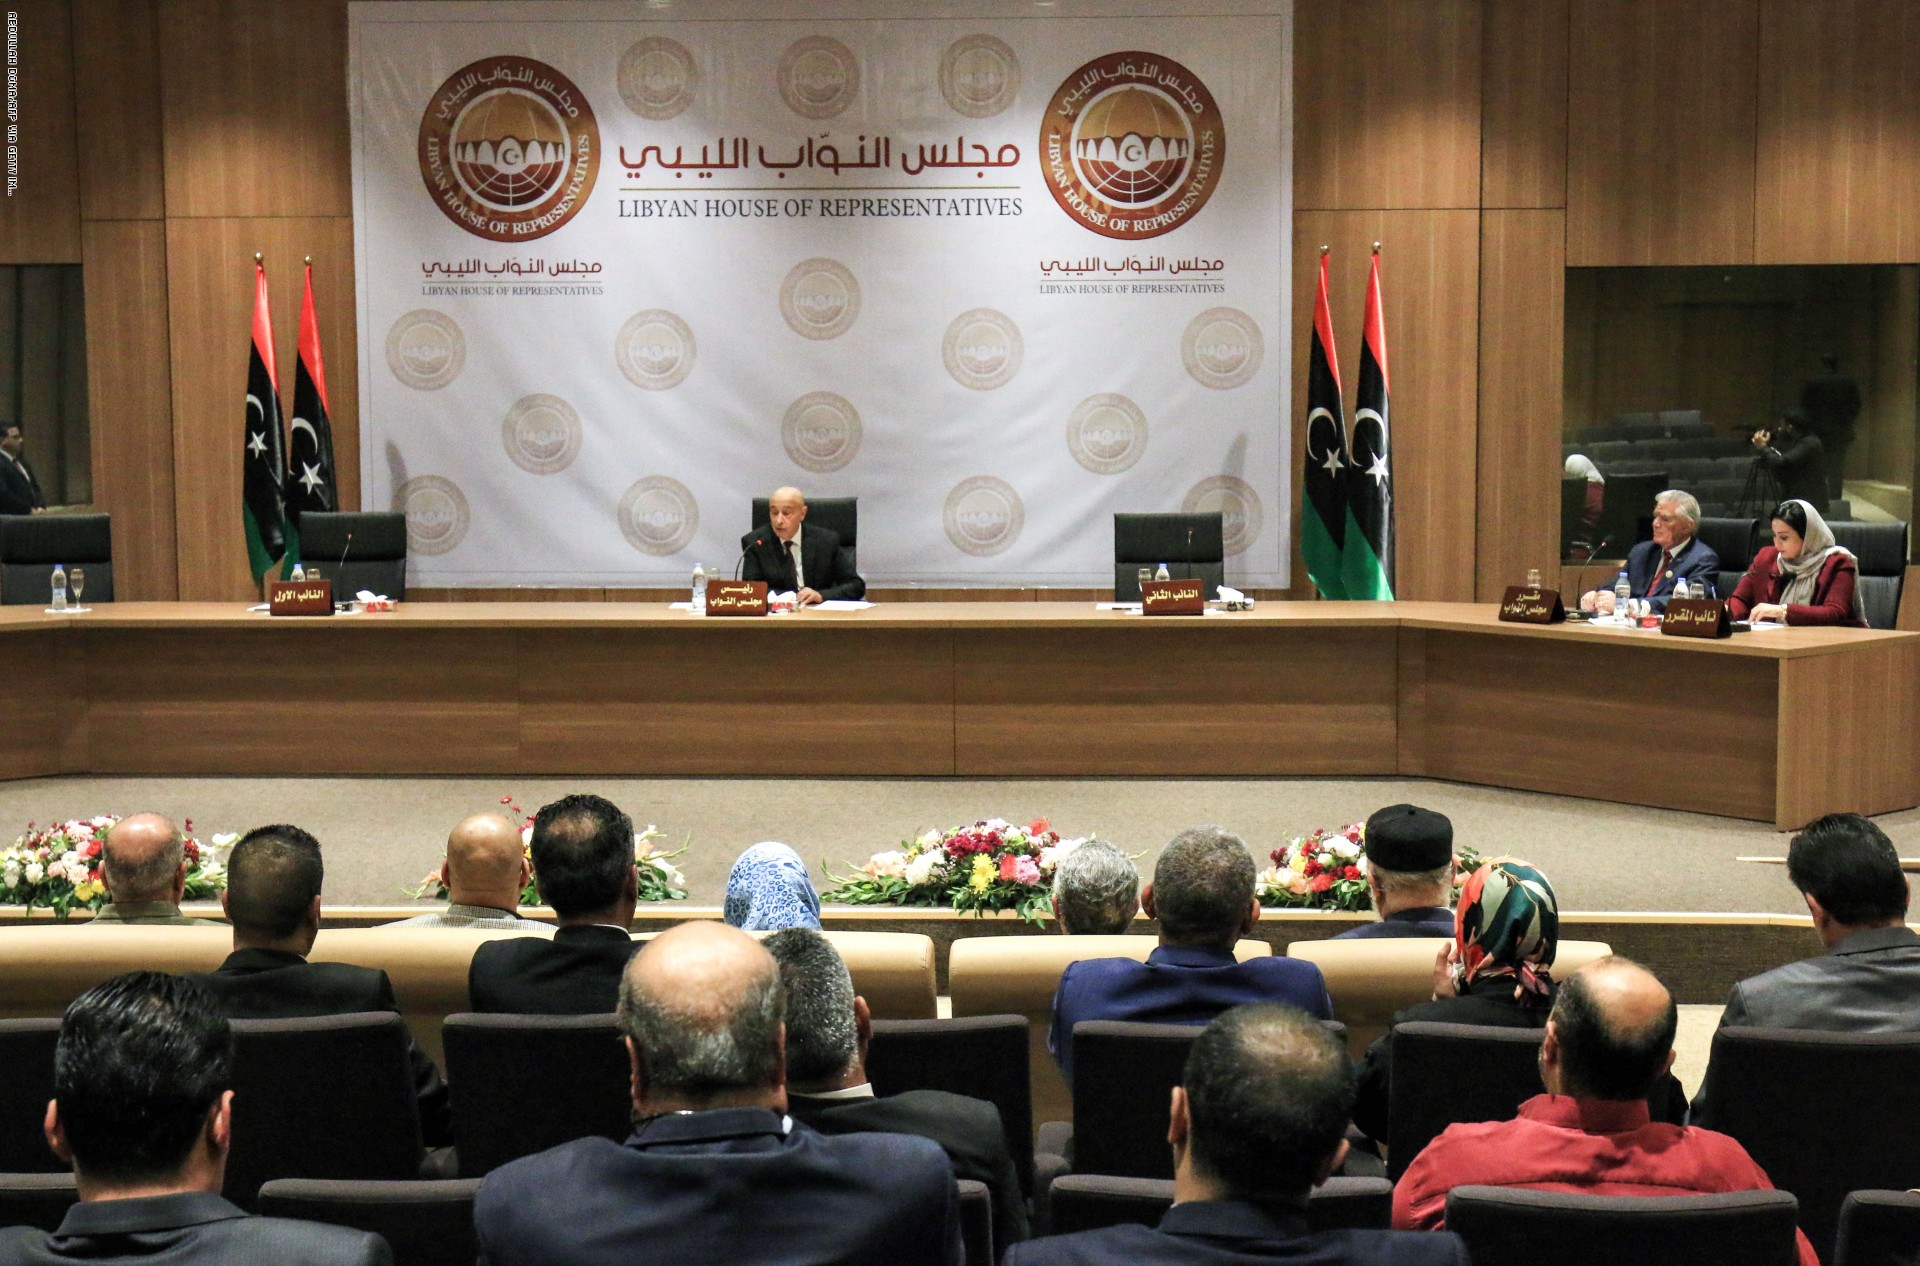   متحدث النواب الليبى: المجلس سيعقد جلسته غدا